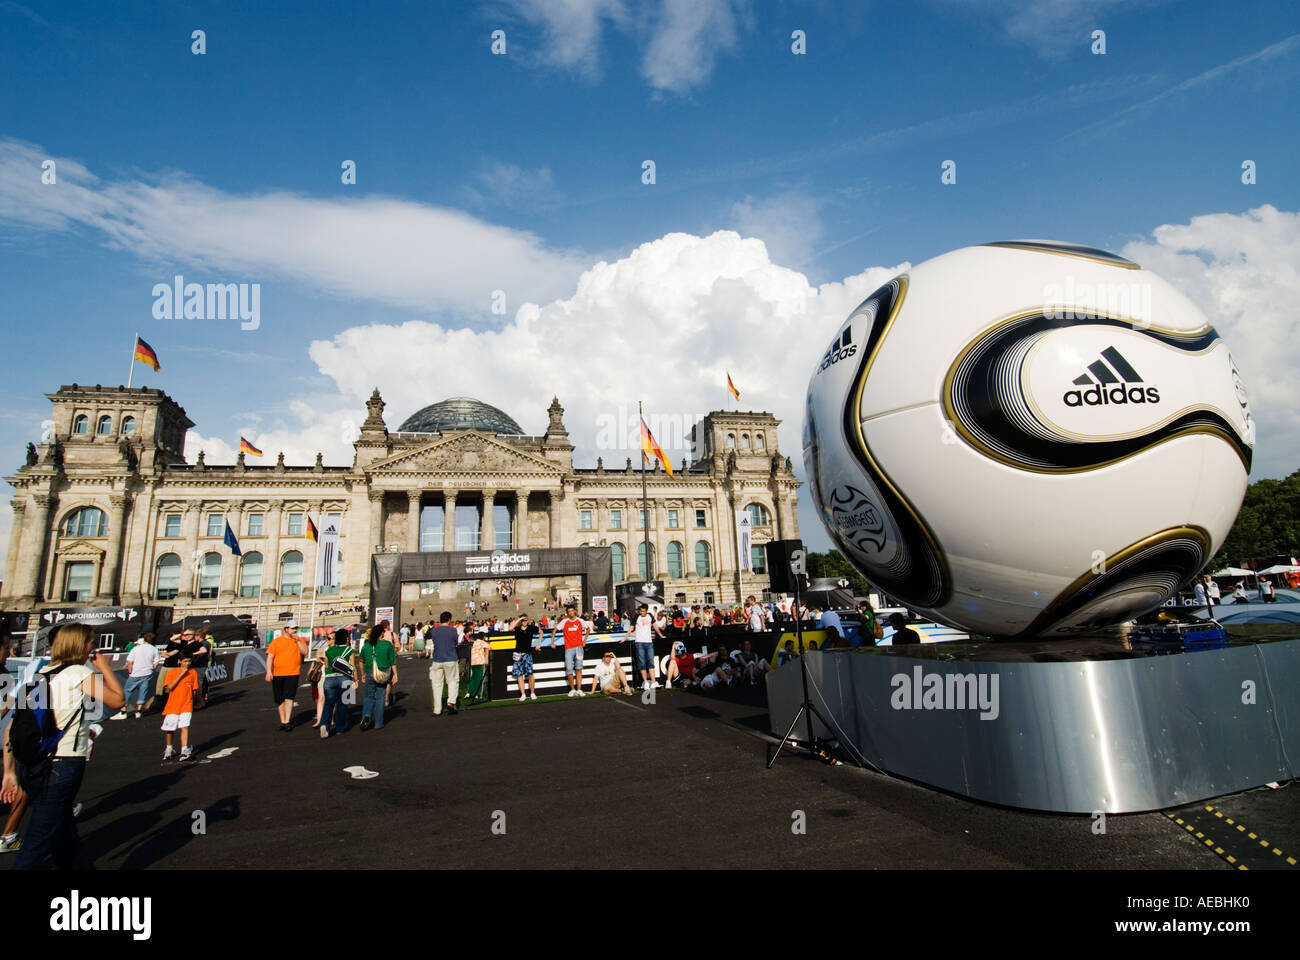 Grande calcio Adidas nel mondo del calcio di fronte il palazzo del Reichstag durante la Word Cup 2006 a Berlino Germania Foto Stock